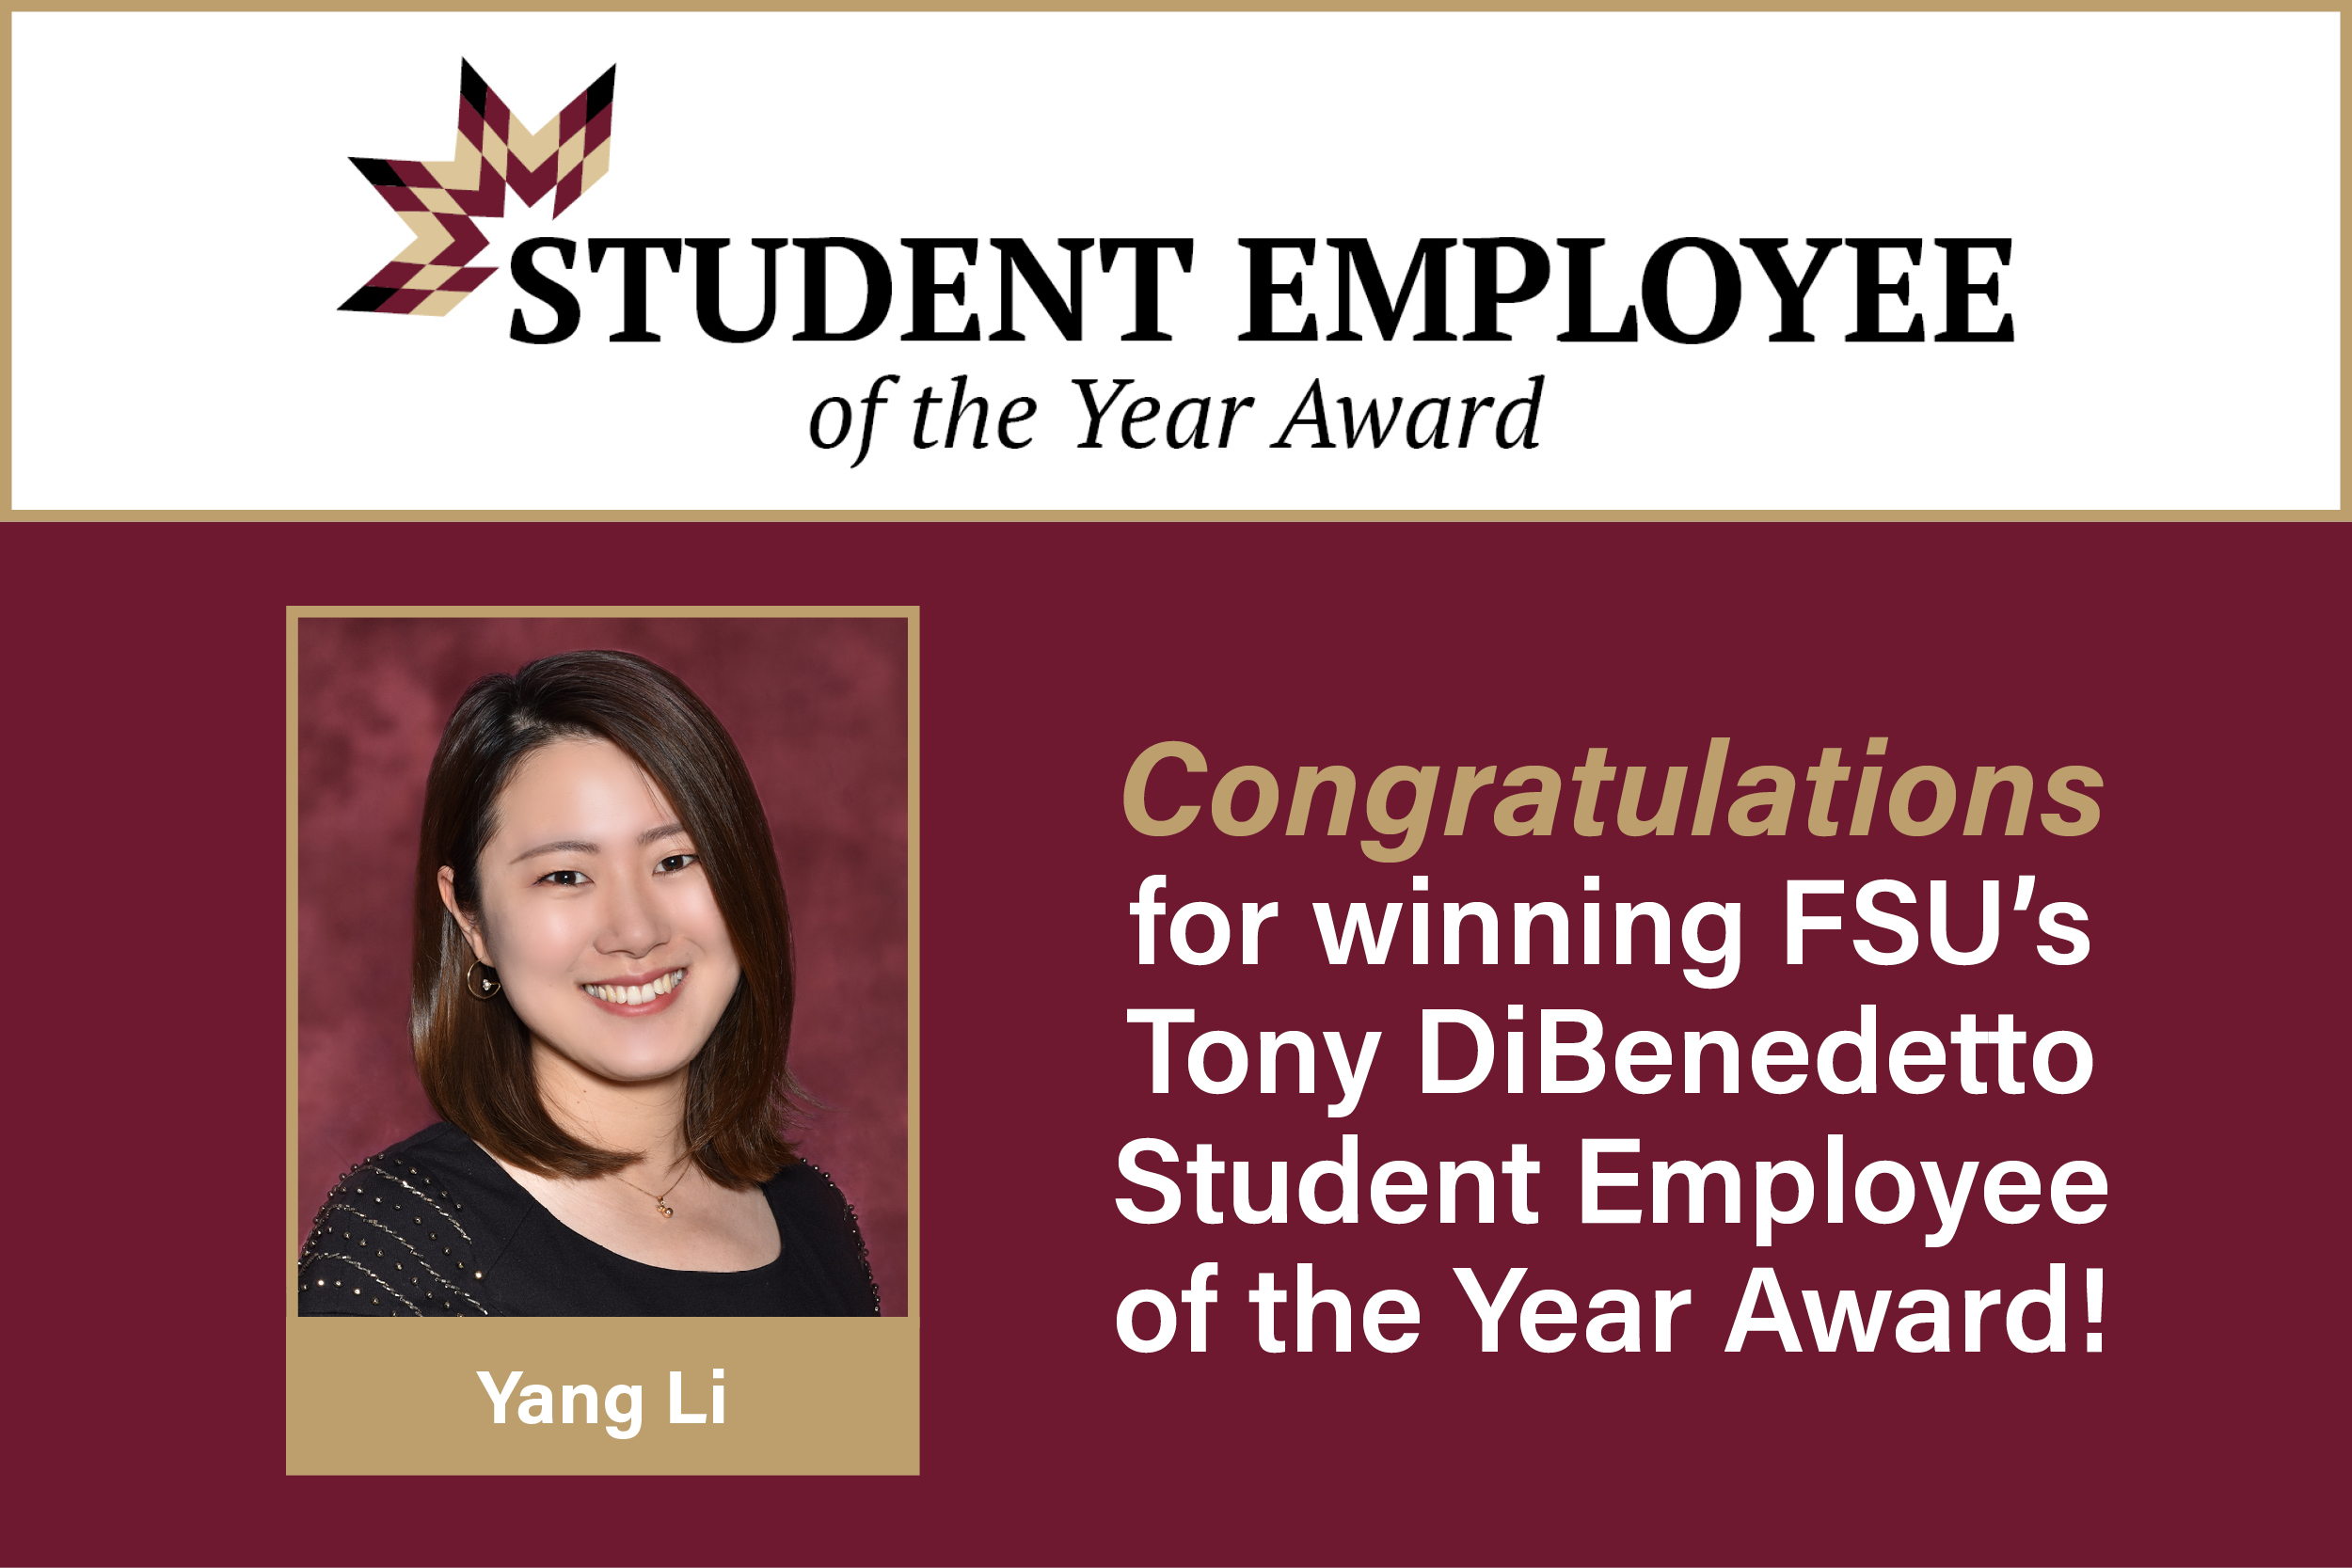 Yang Li Wins Student Employee of the Year